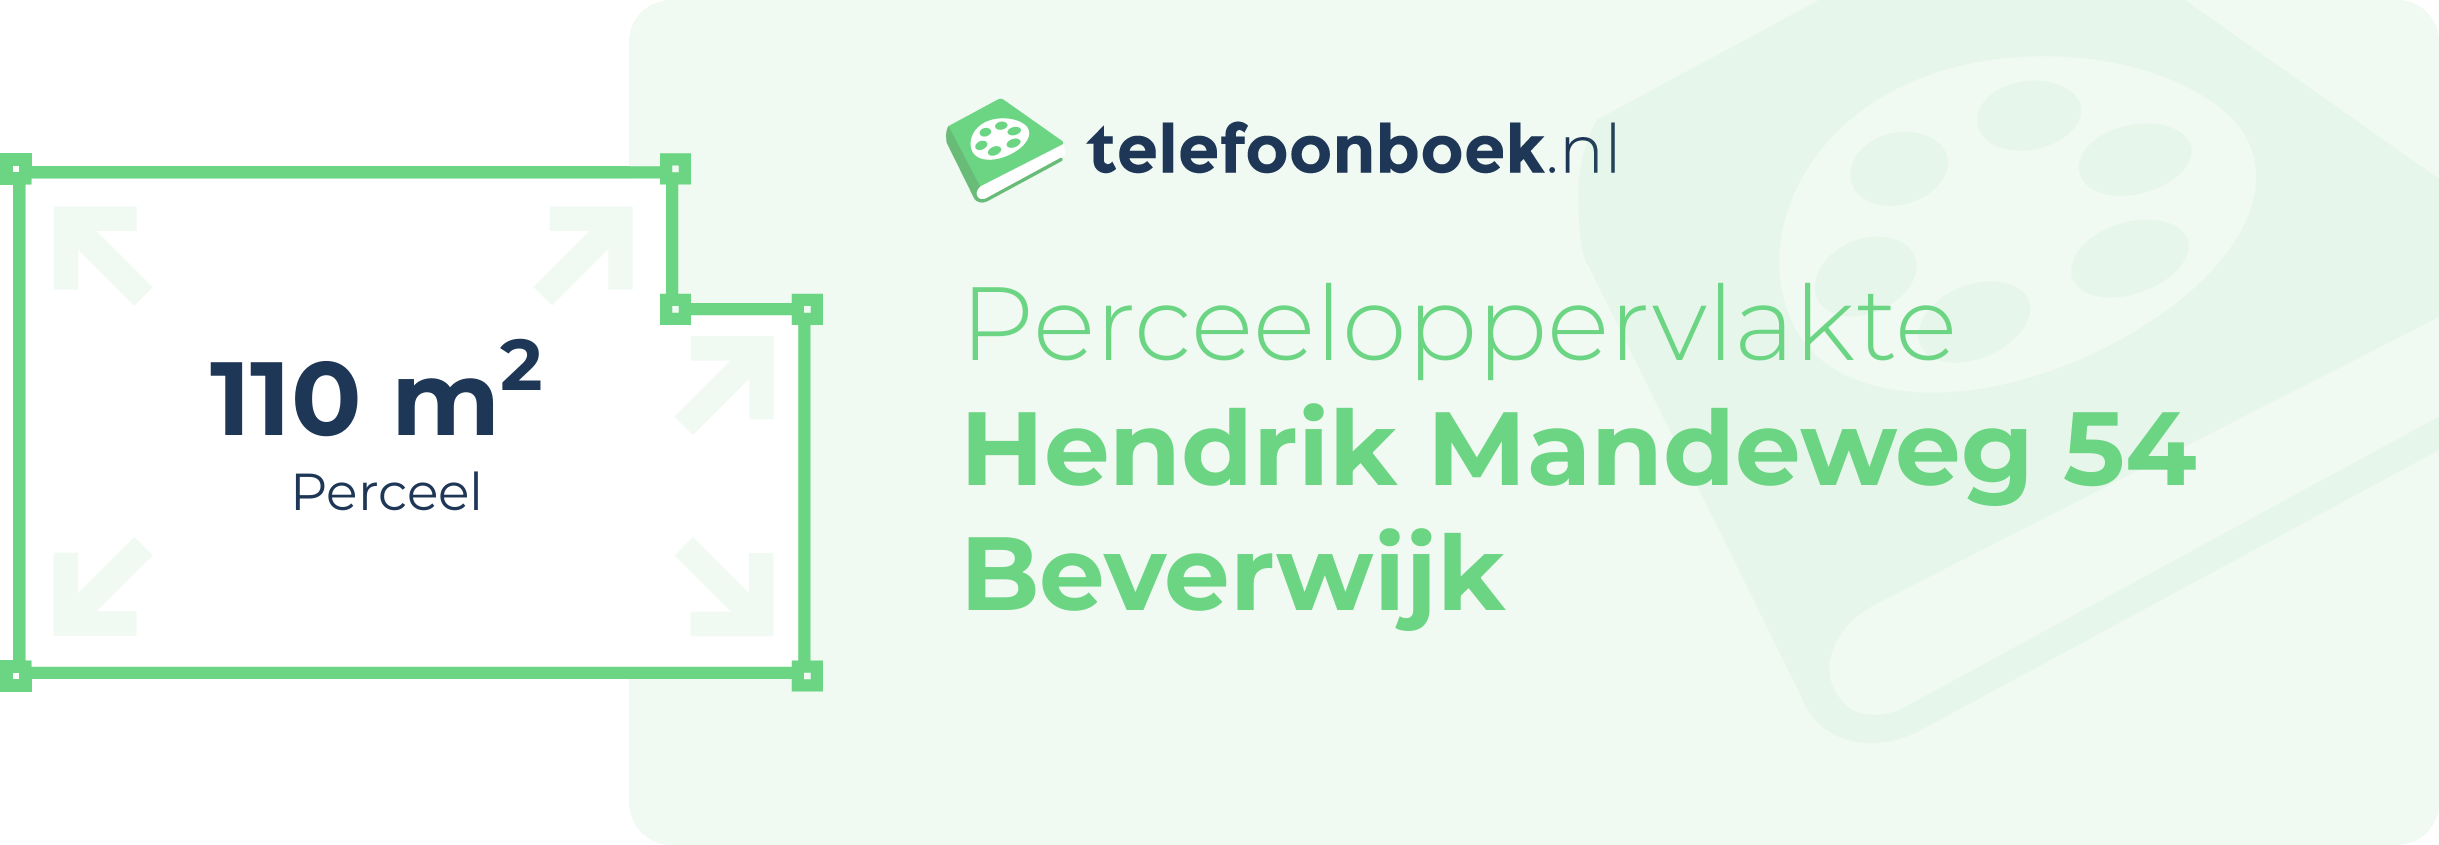 Perceeloppervlakte Hendrik Mandeweg 54 Beverwijk